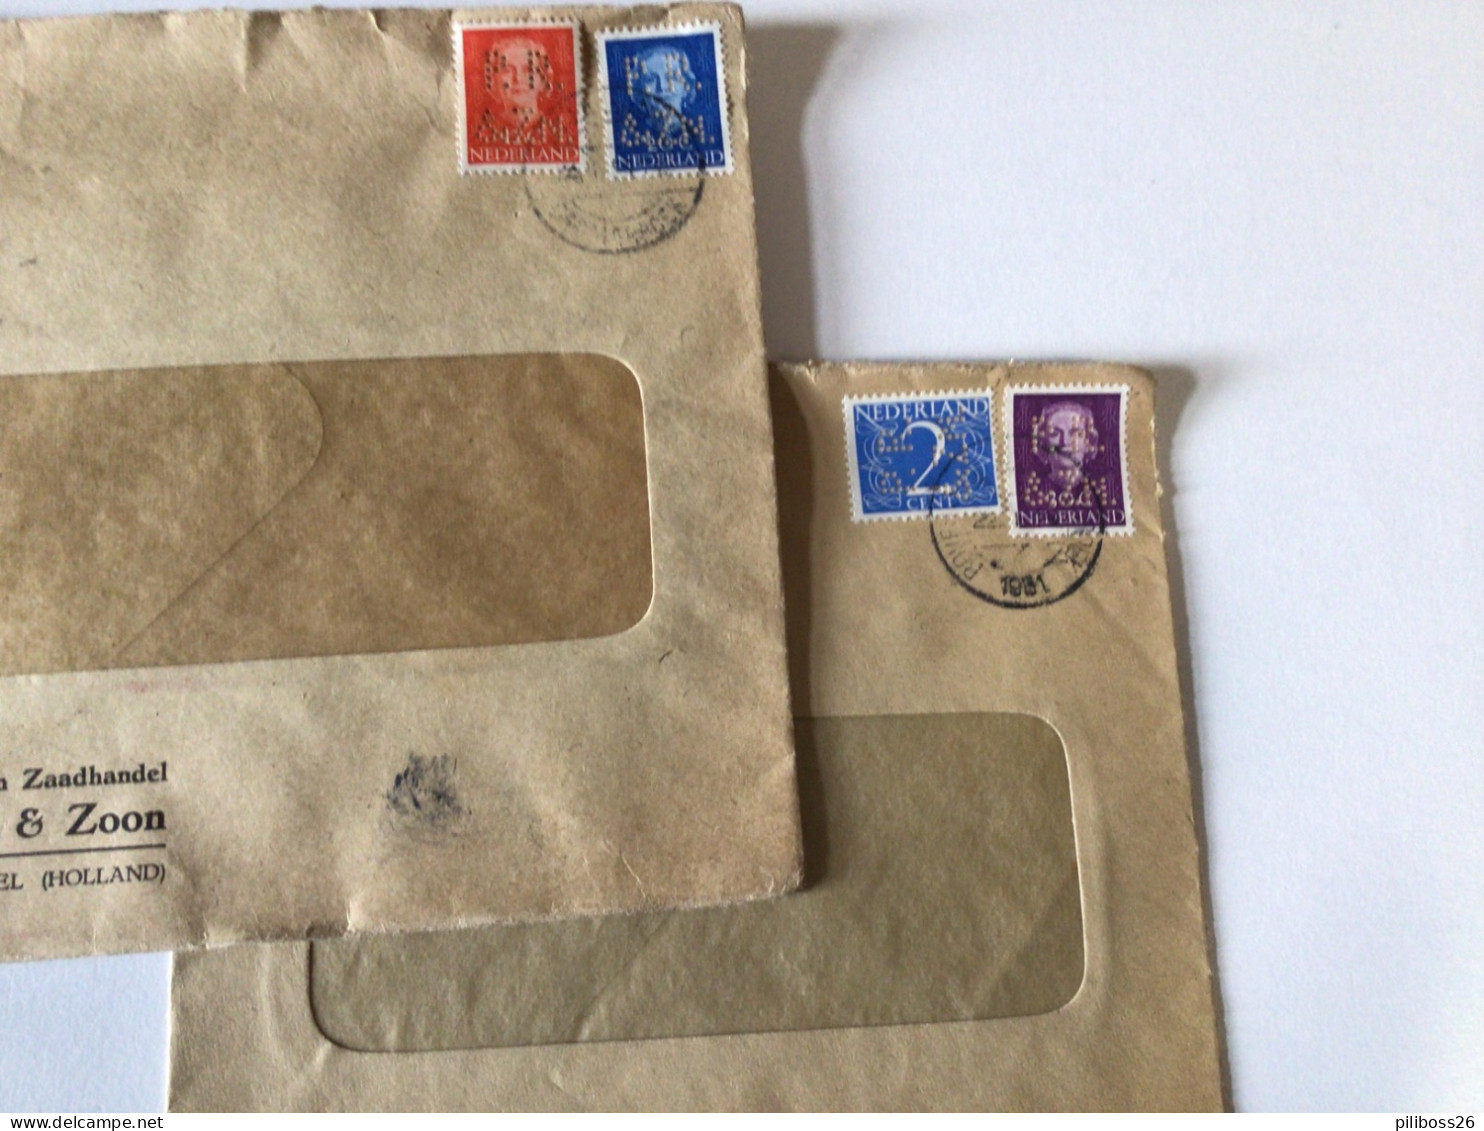 Lot de lettres des Pays Bas vers la France , de 1930 à 1951 , perforé , distributeur, différentes valeurs d affranchisse